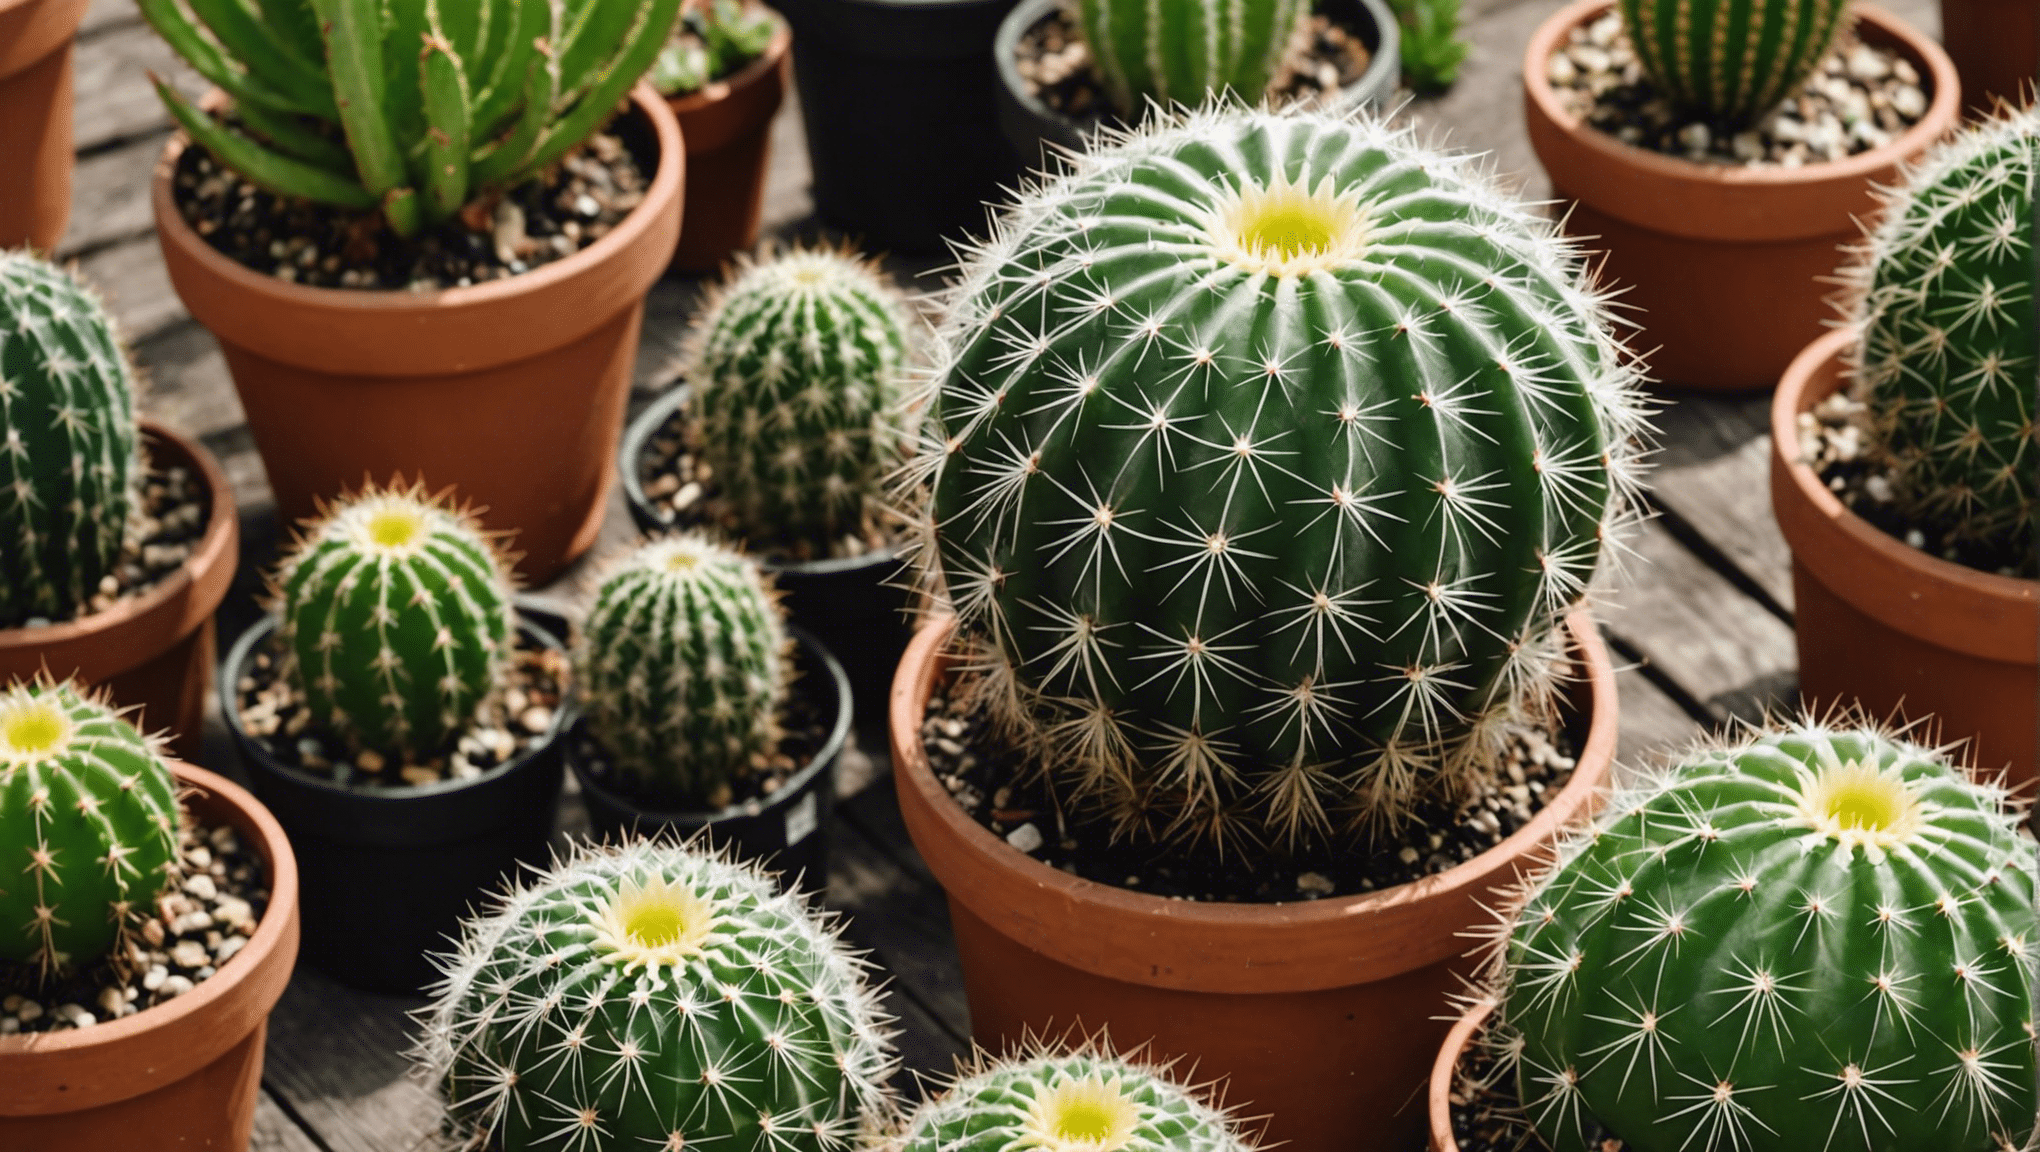 découvrez comment choisir le bon engrais pour vos cactus et plantes grasses en explorant les 3 types les plus efficaces. trouvez la solution idéale pour une croissance saine et robuste.